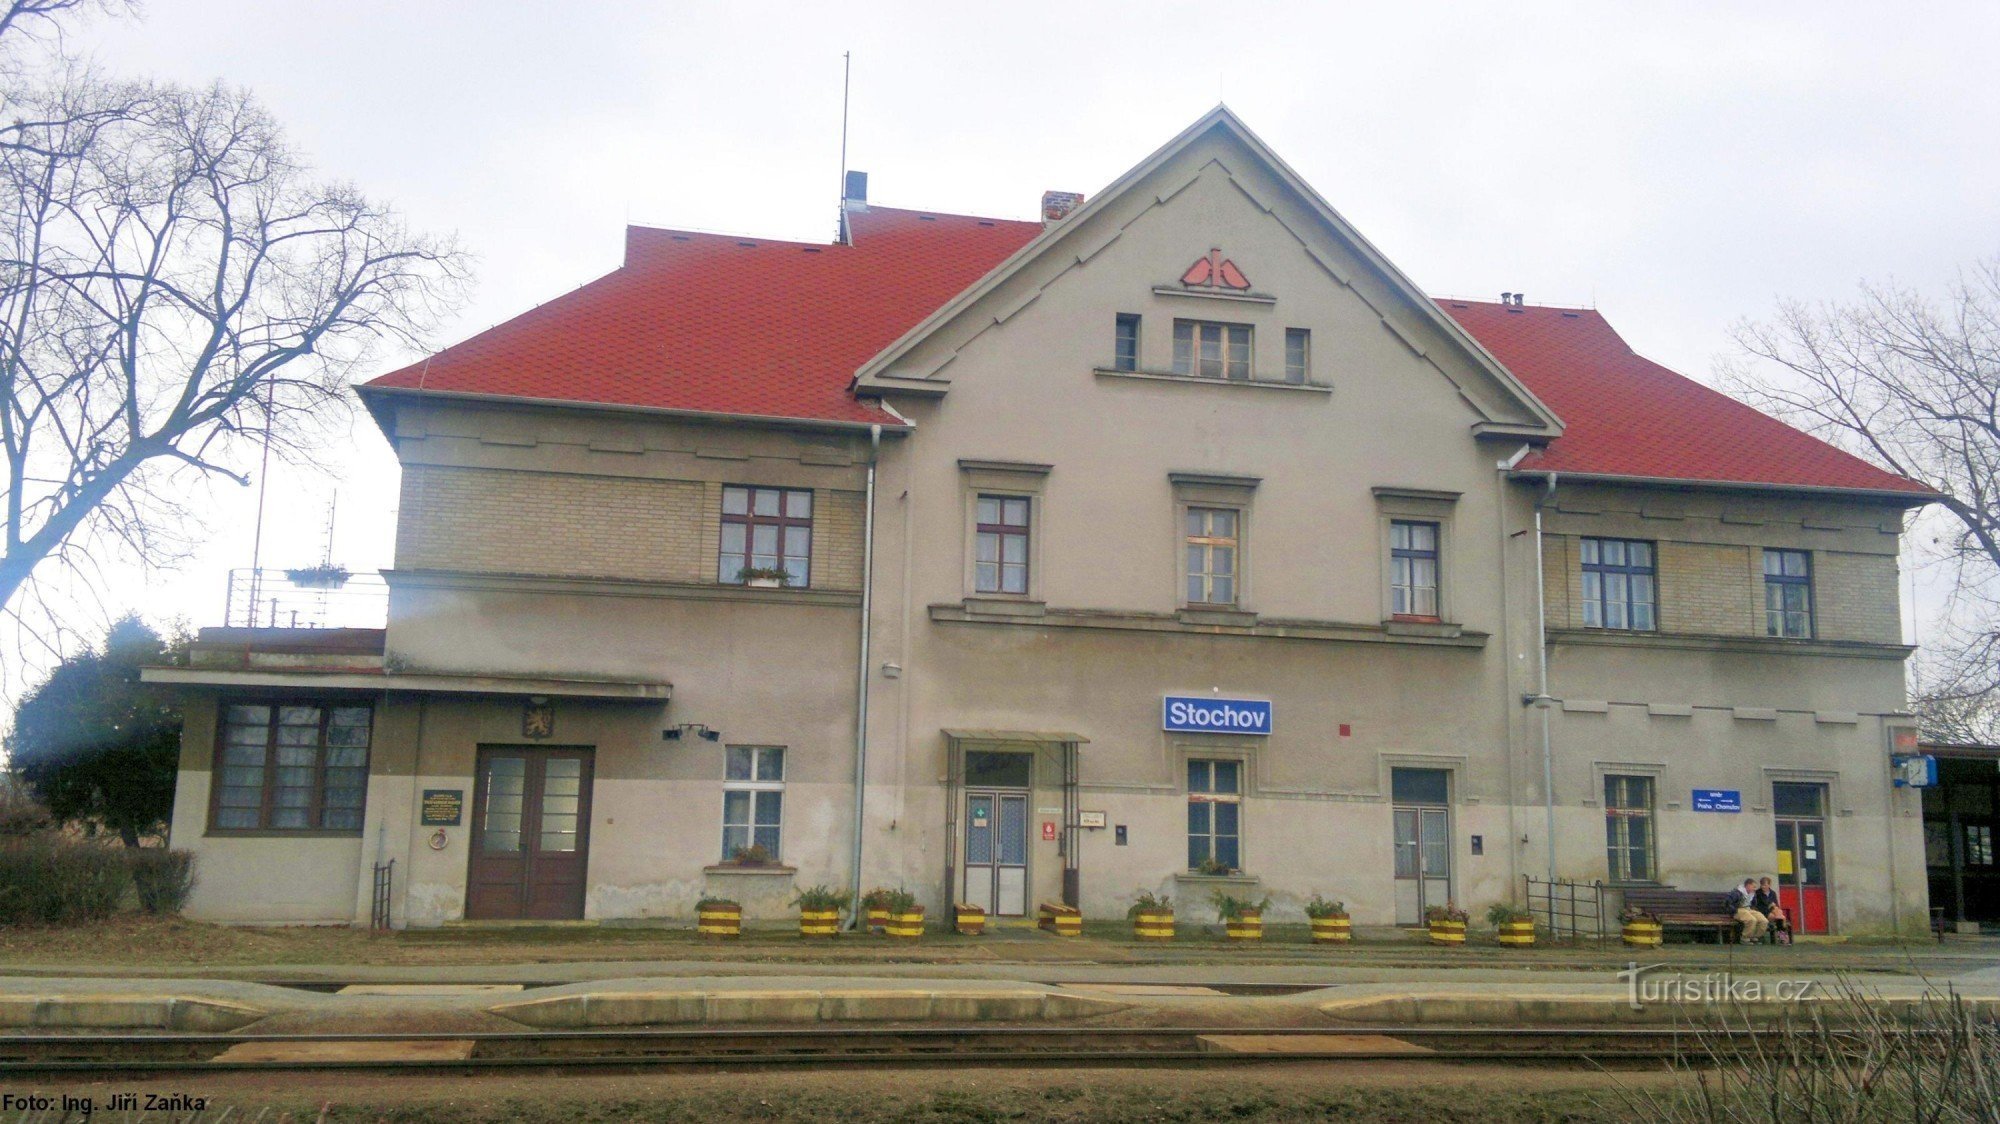 Stochov Station